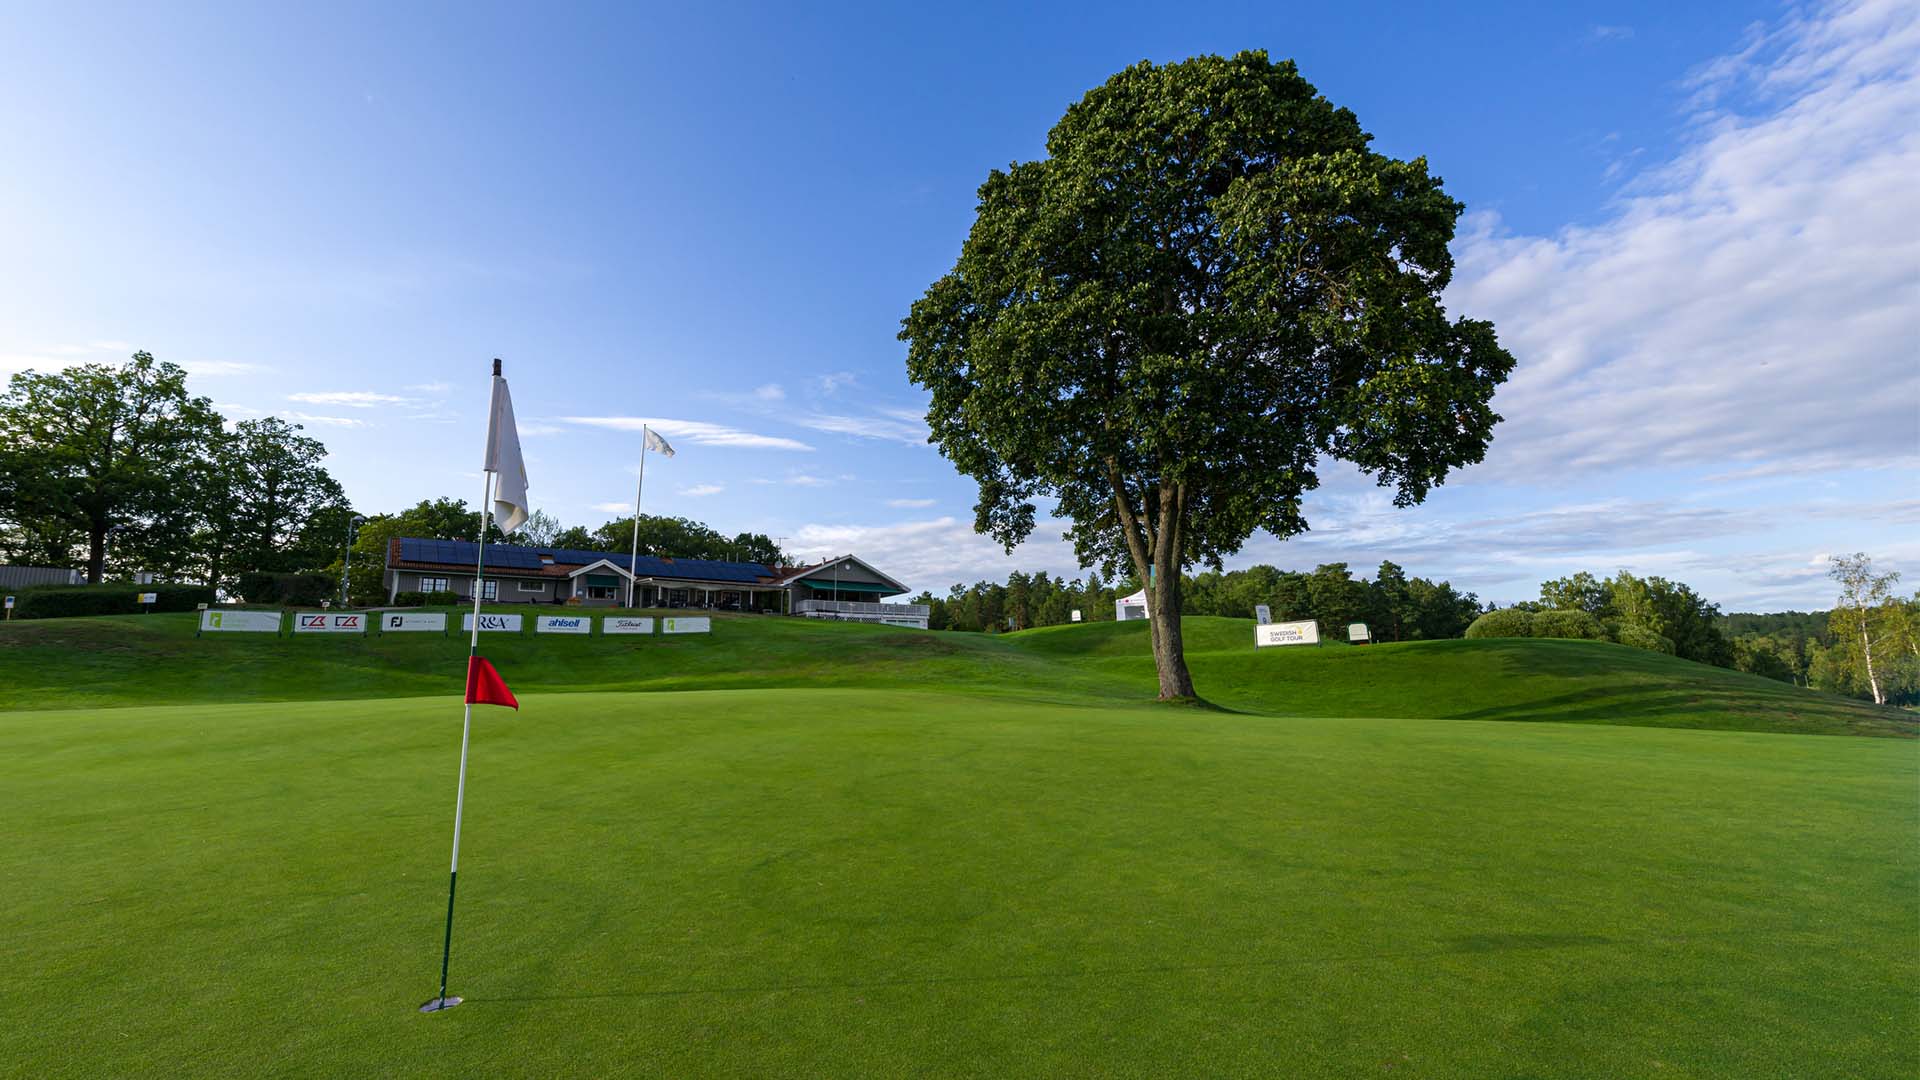 Vy över golfbana med klubbhuset i bakgrunden. Pressbild